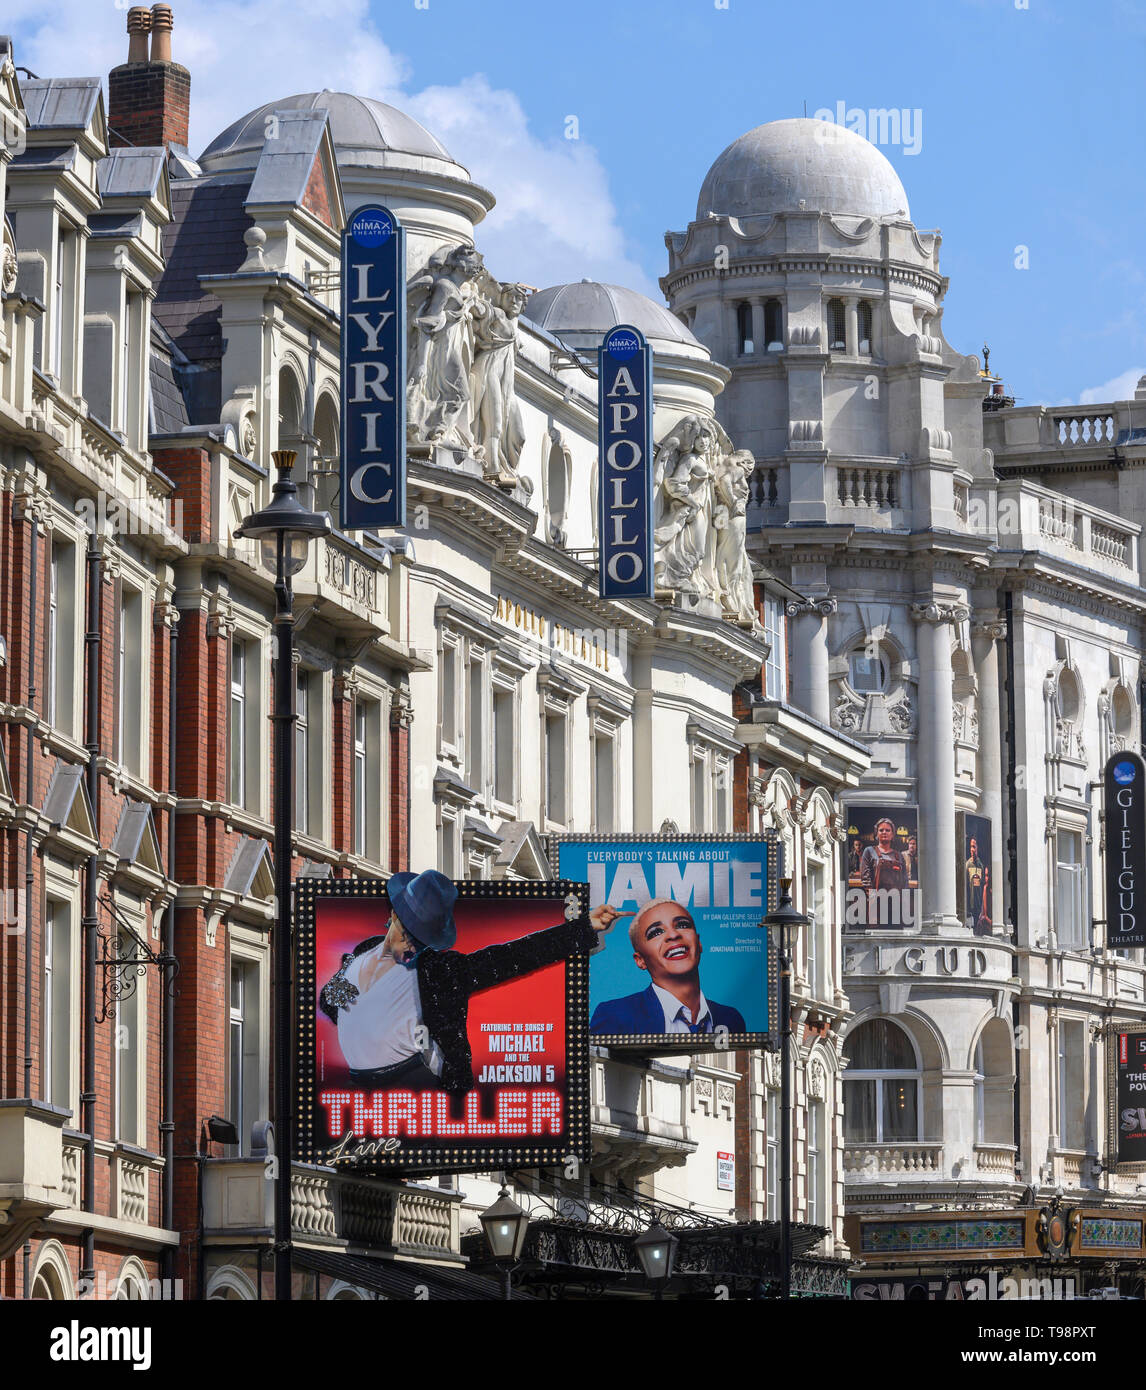 Vista guardando verso est lungo Shaftesbury Avenue, nel West End di Londra, Inghilterra, Regno Unito - mostra classic West End Theatres compresi Lyric e Apollo. Foto Stock